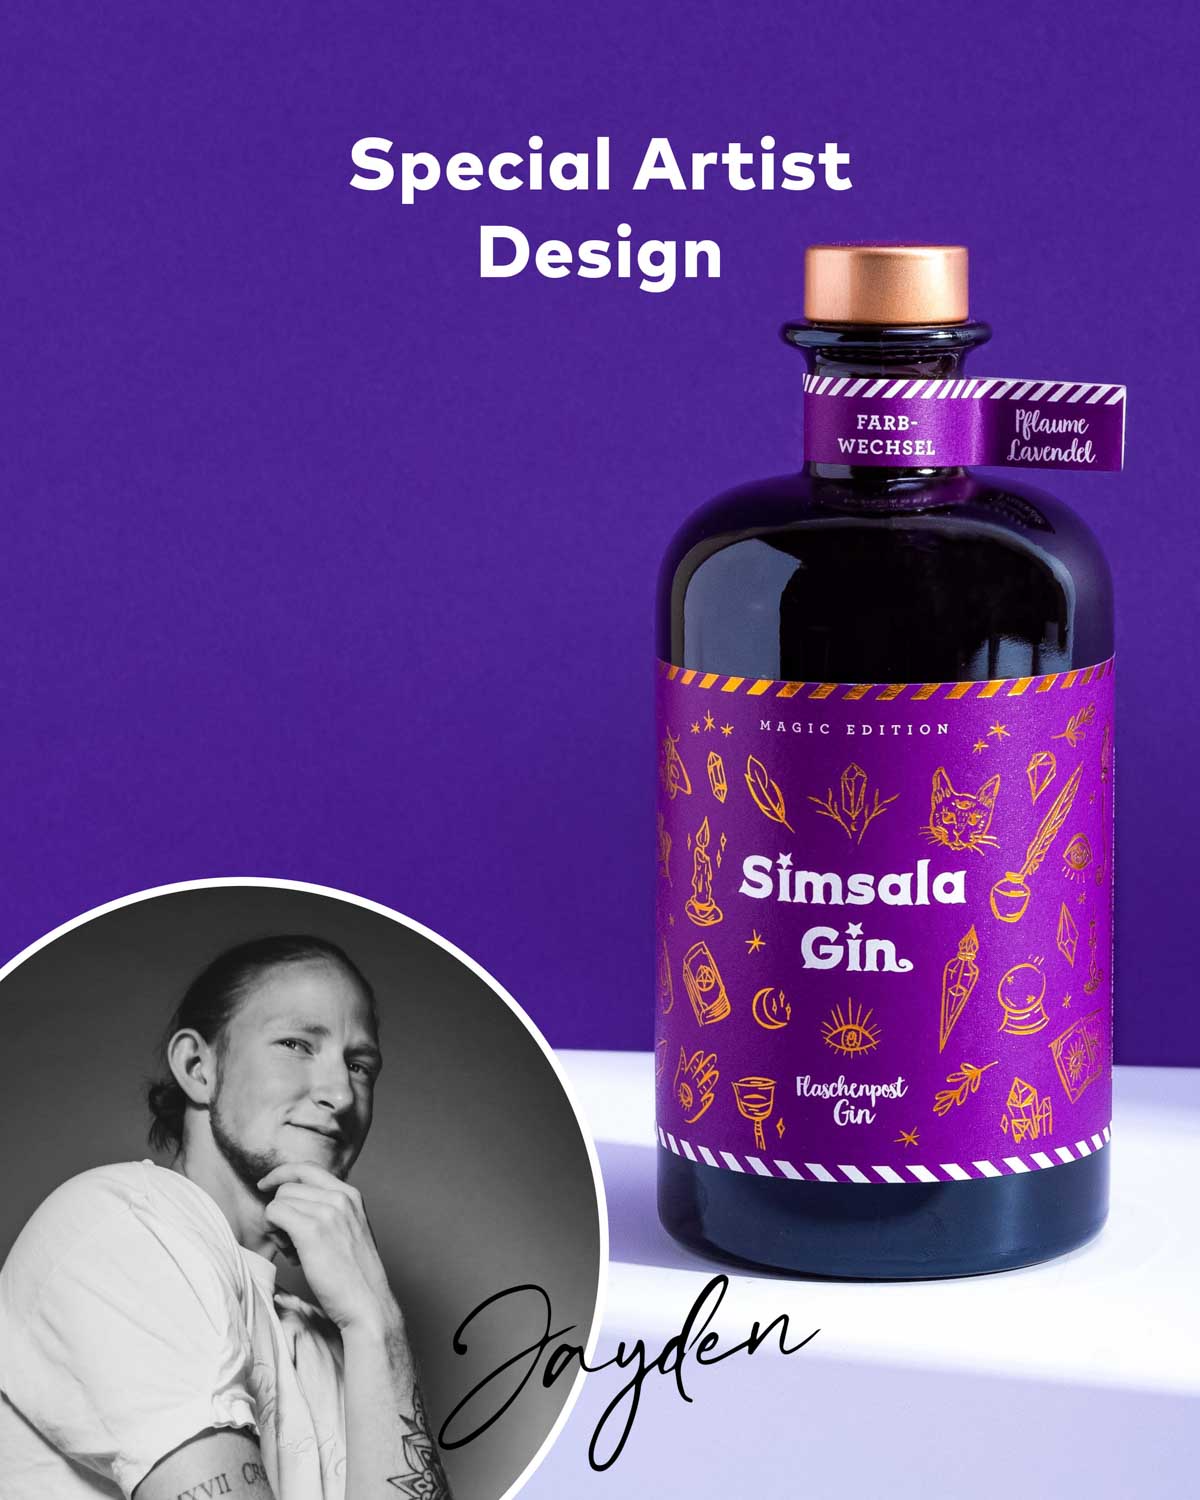 Unser Designer Jayden hat besonders viel herzblut in das Design der neuen Simsala Gin Limited Edition mit Glitzer von Flaschenpost Gin gesteckt für ein magisches Kunstwerk als Ergebnis. | Die Flasche verzaubert mit dunklem Label und goldenen Designelementen.